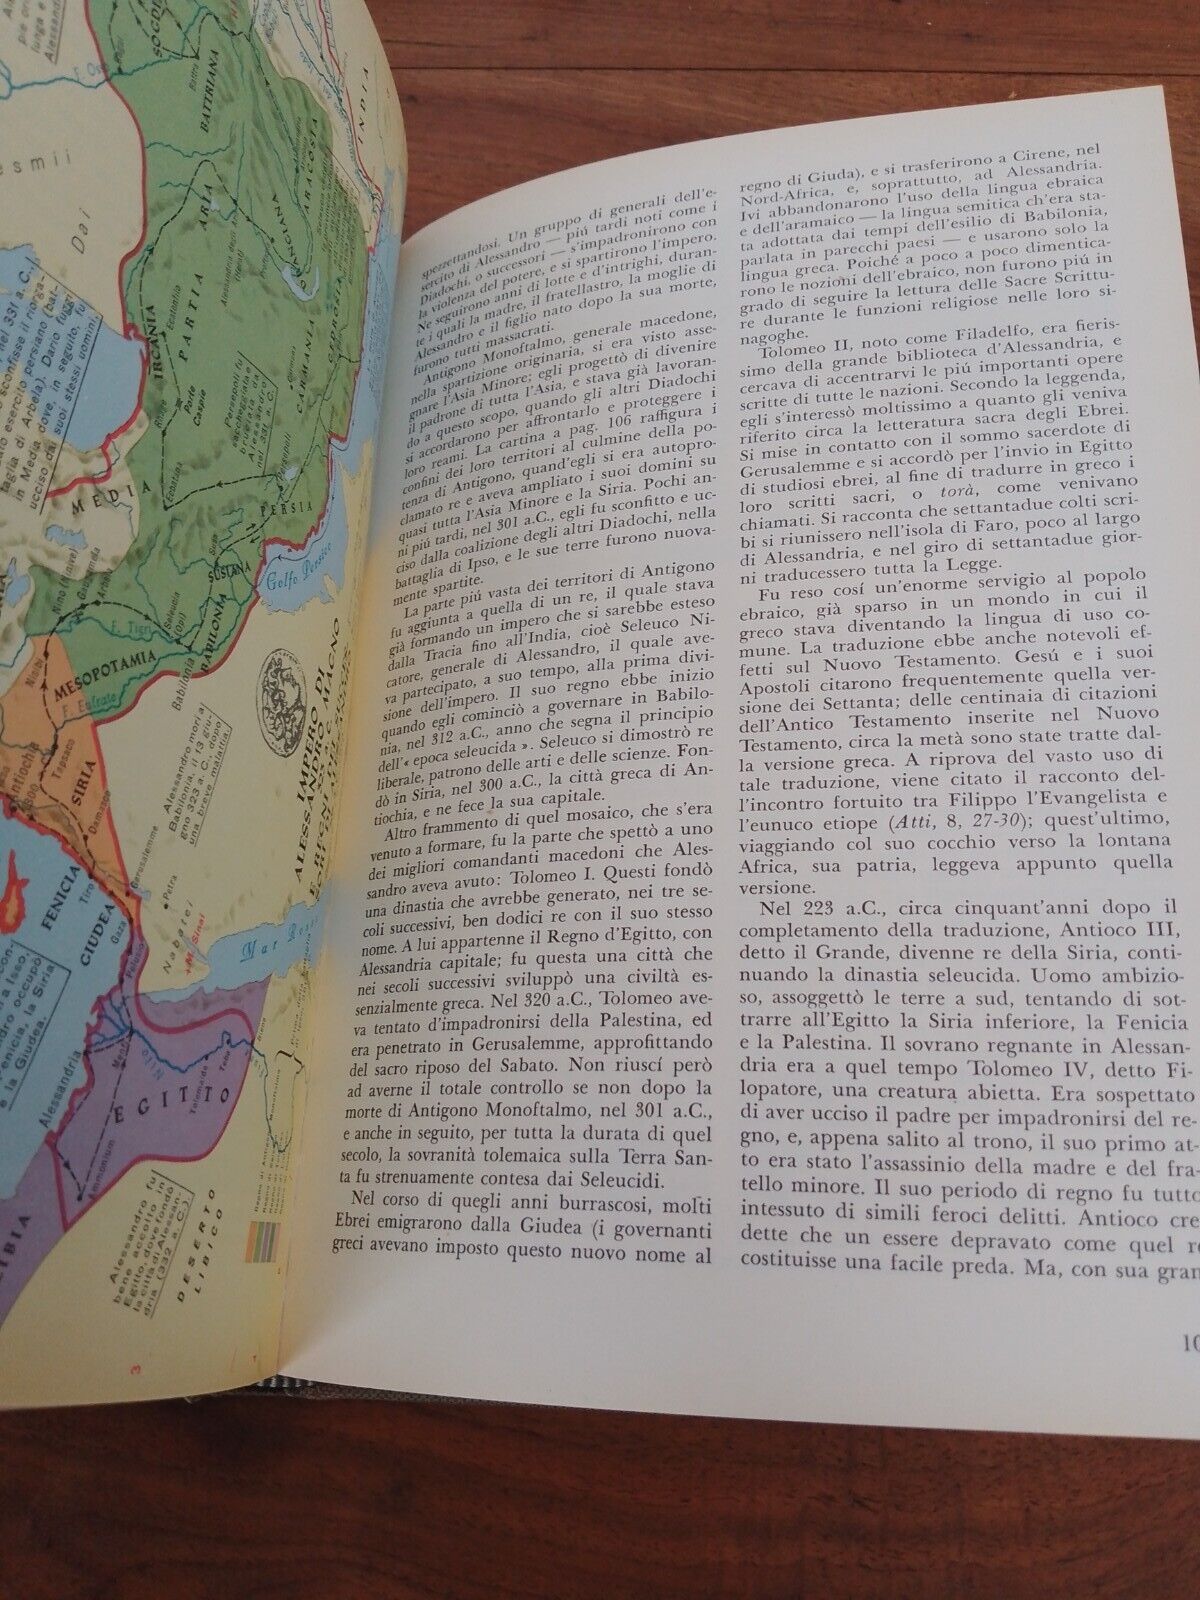 Il Mondo della Bibbia, N.B.Keyes, se. Reader's Digest, 1963